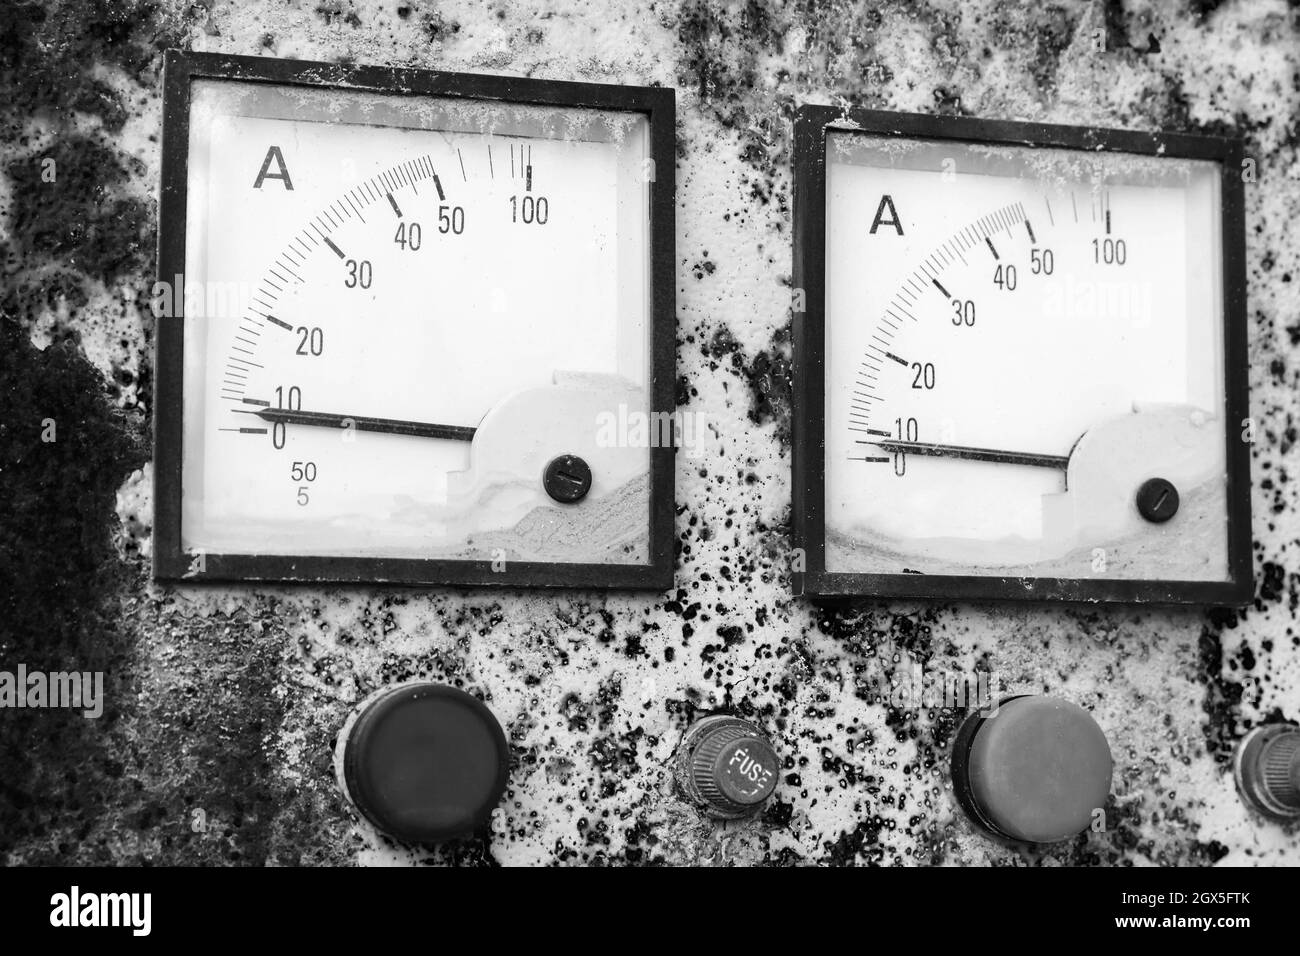 Deux ampèremètres carrés industriels indiquent un niveau de puissance nul, une photo rapprochée d'un vieux panneau de commande électrique rouillé. Photo stylisée vintage en noir et blanc Banque D'Images